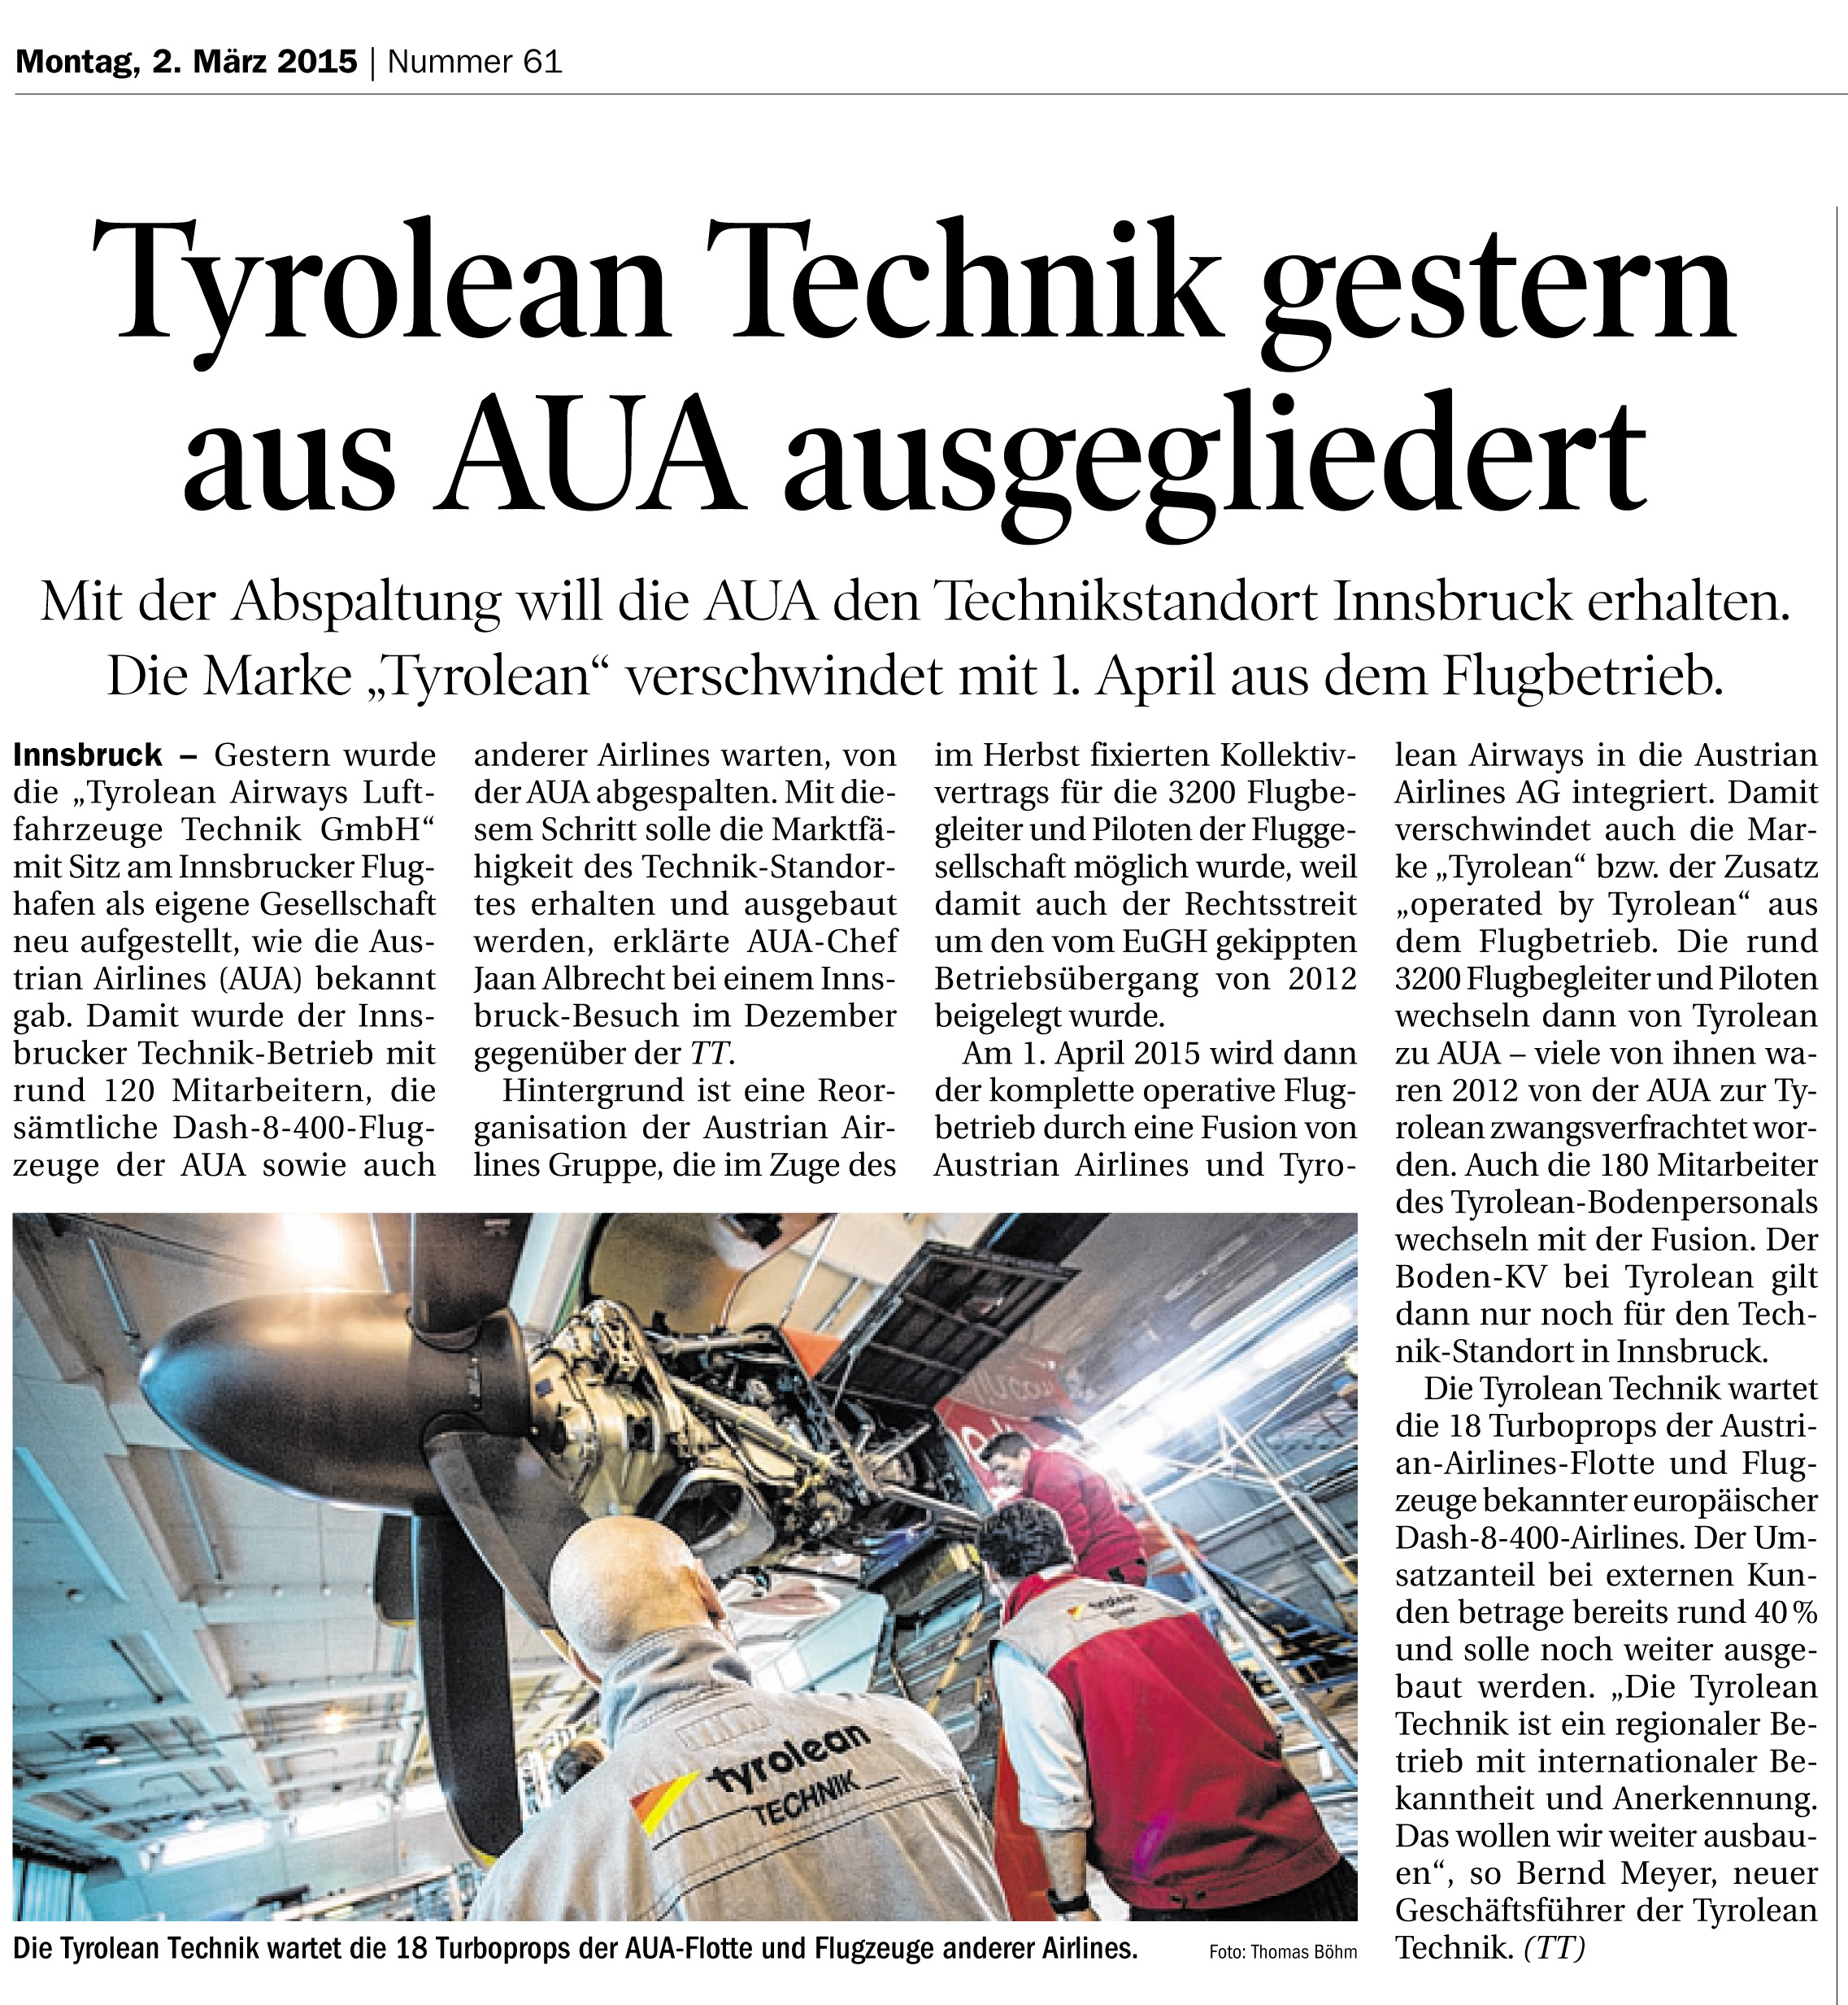 2015_03_01_TT_Tyrolean Technik ausgegliedert